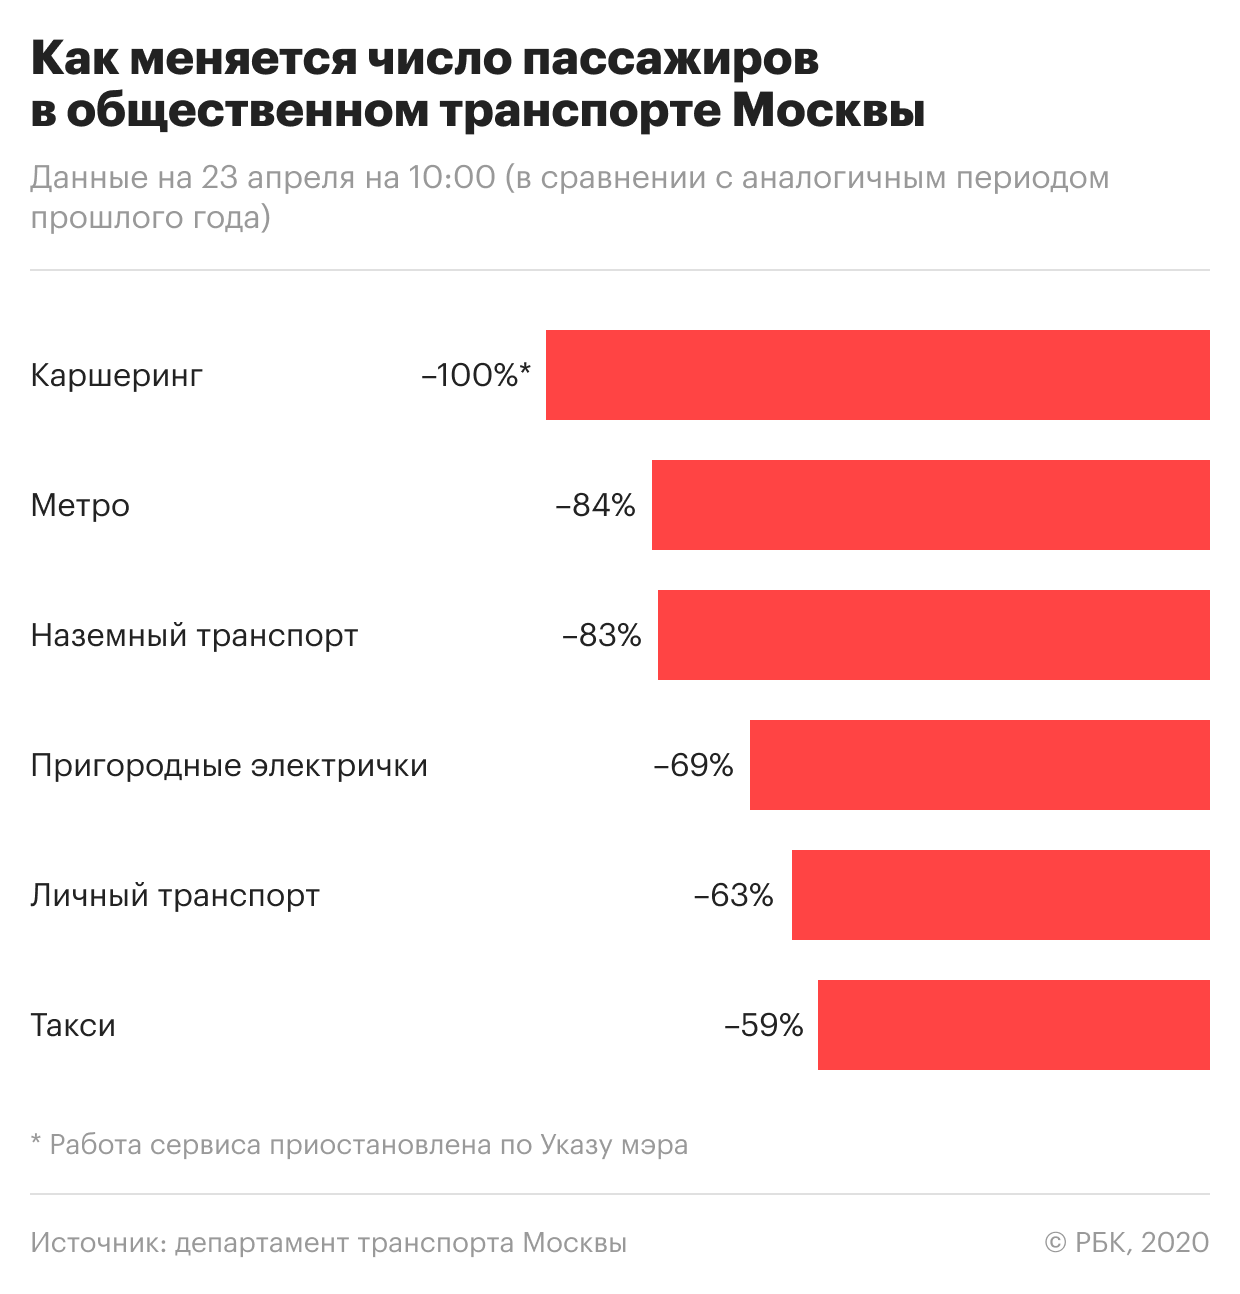 Большинство москвичей согласились жертвовать правами для борьбы с вирусом